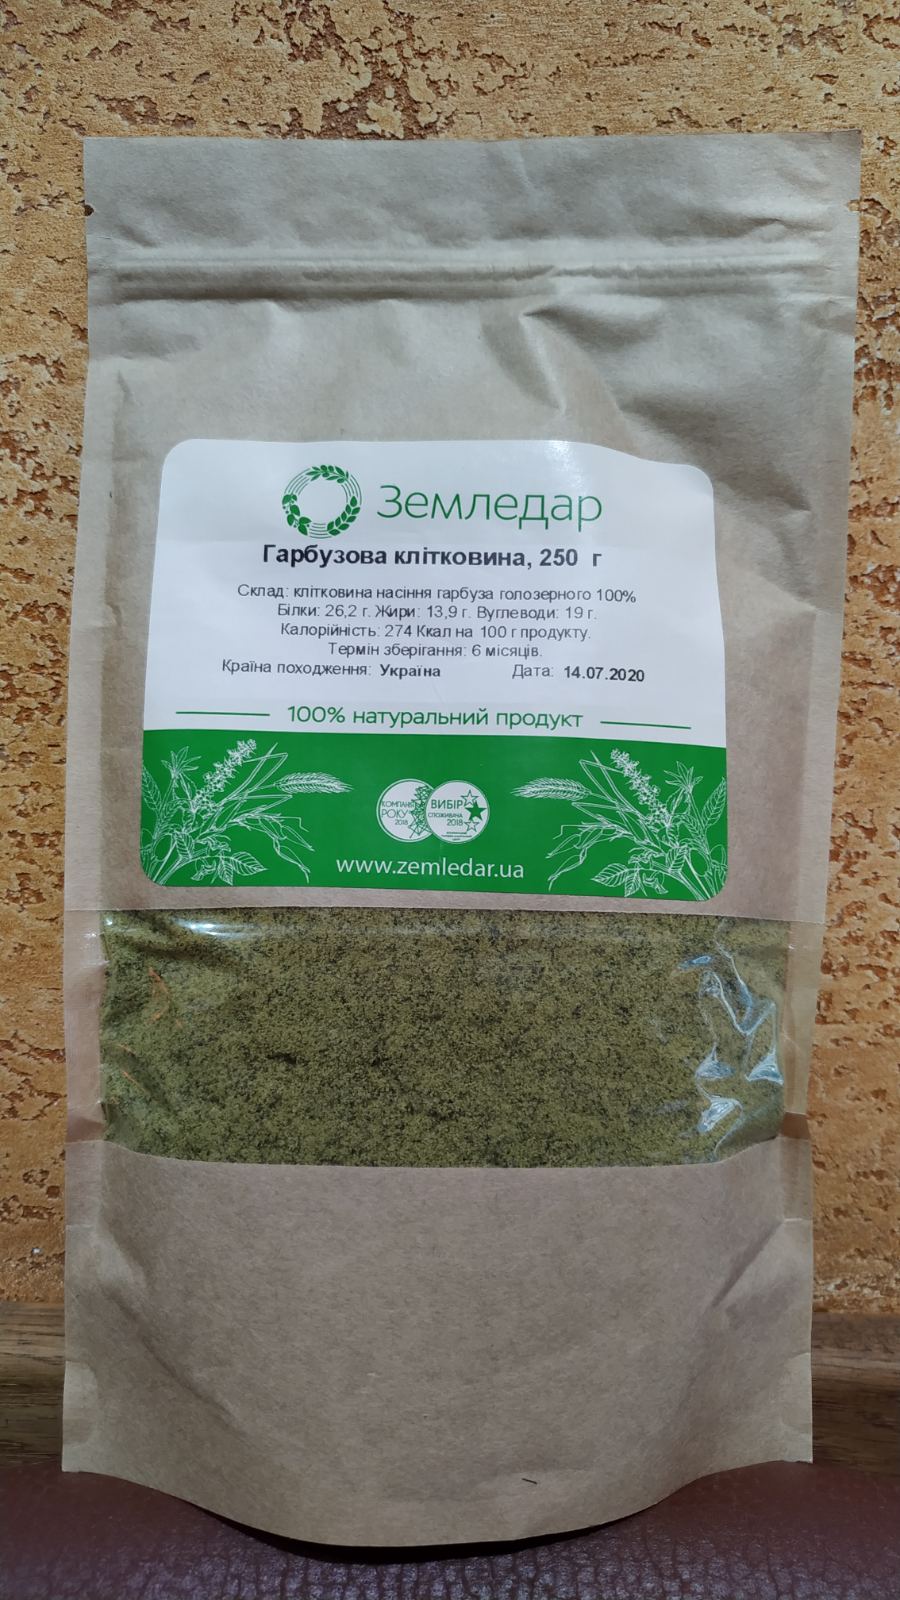 Клетчатка из семян Тыквы 100% натуральный продукт, тыквенная клетчатка, 250 гр, Земледар, Ивано-Франковск.